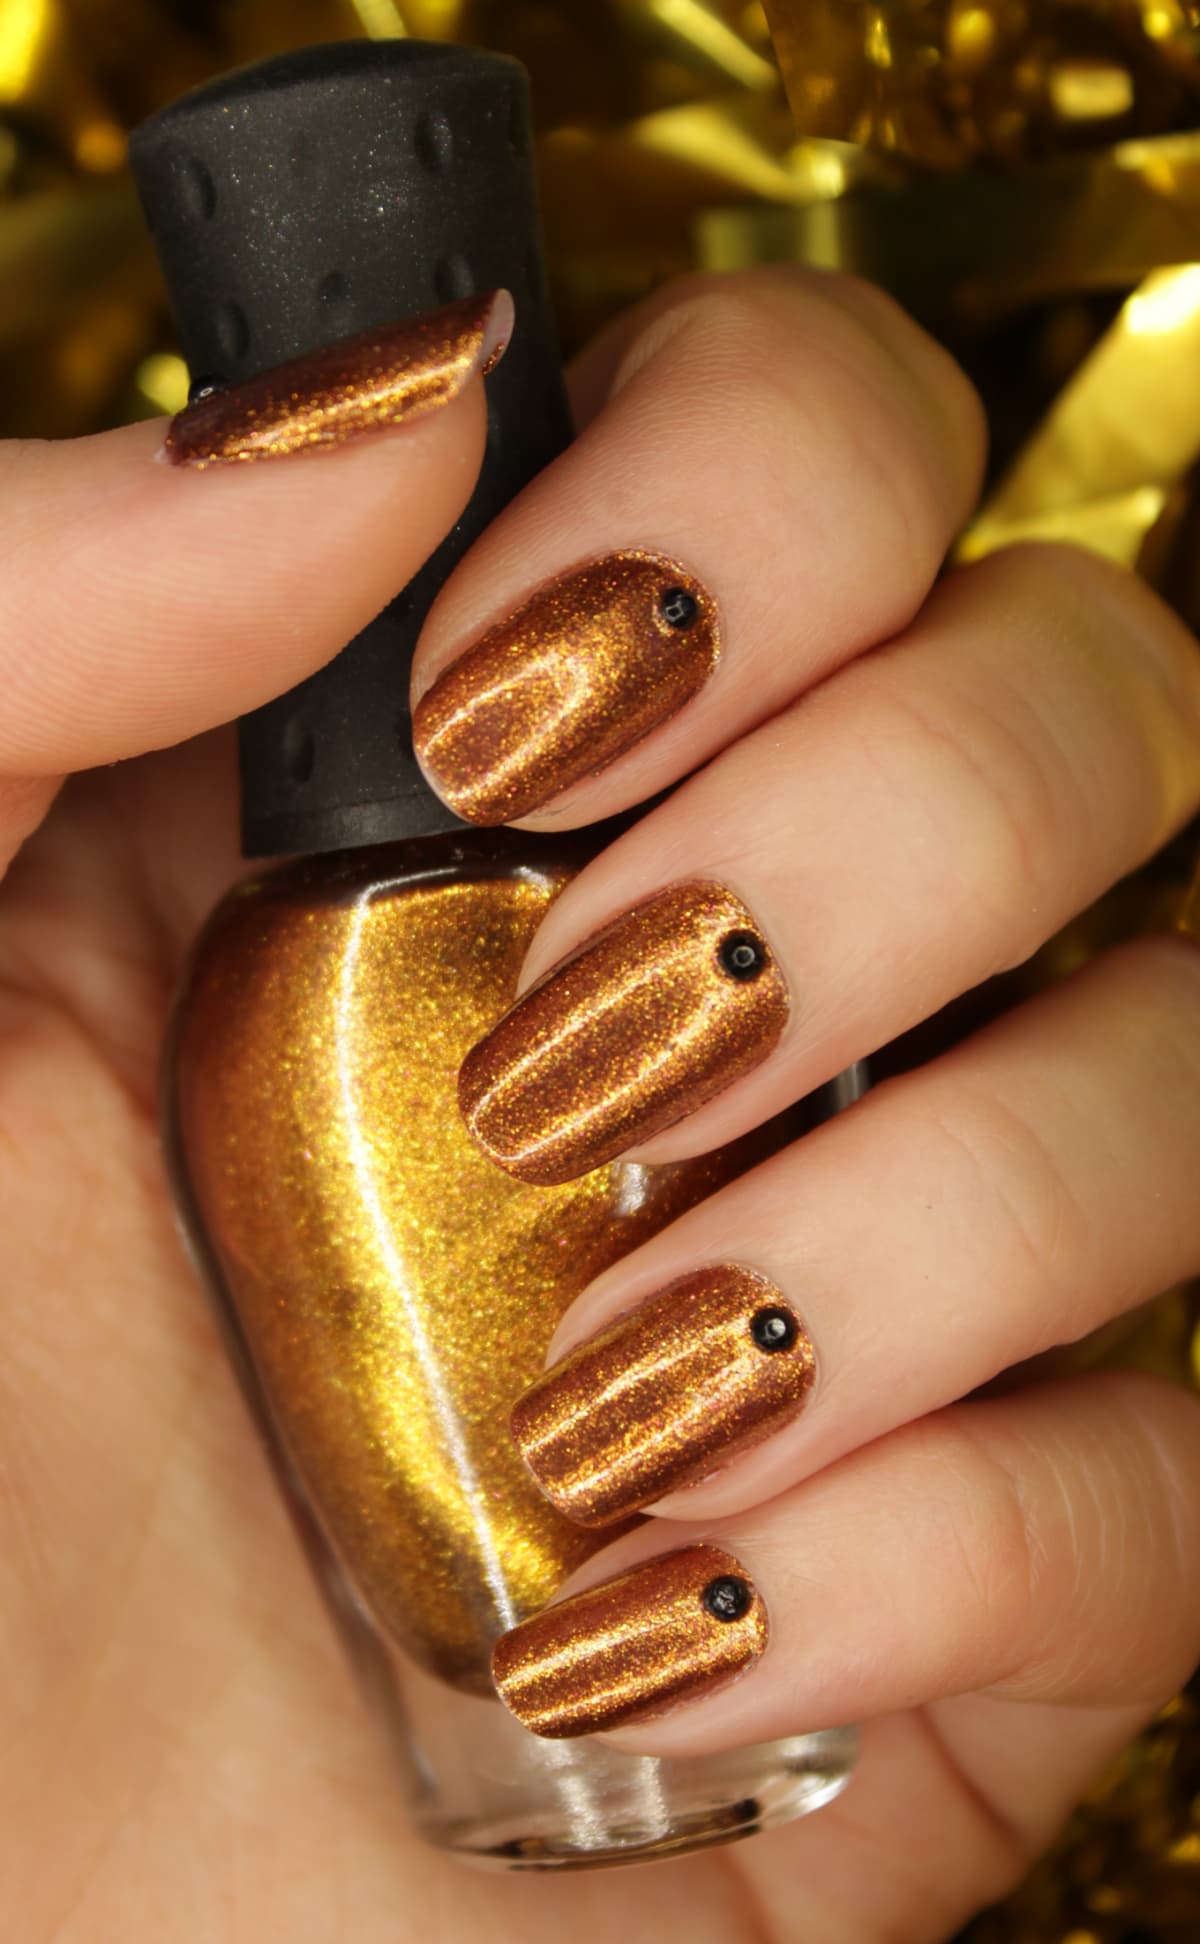 nails with gold nail polish holding nail polish bottle